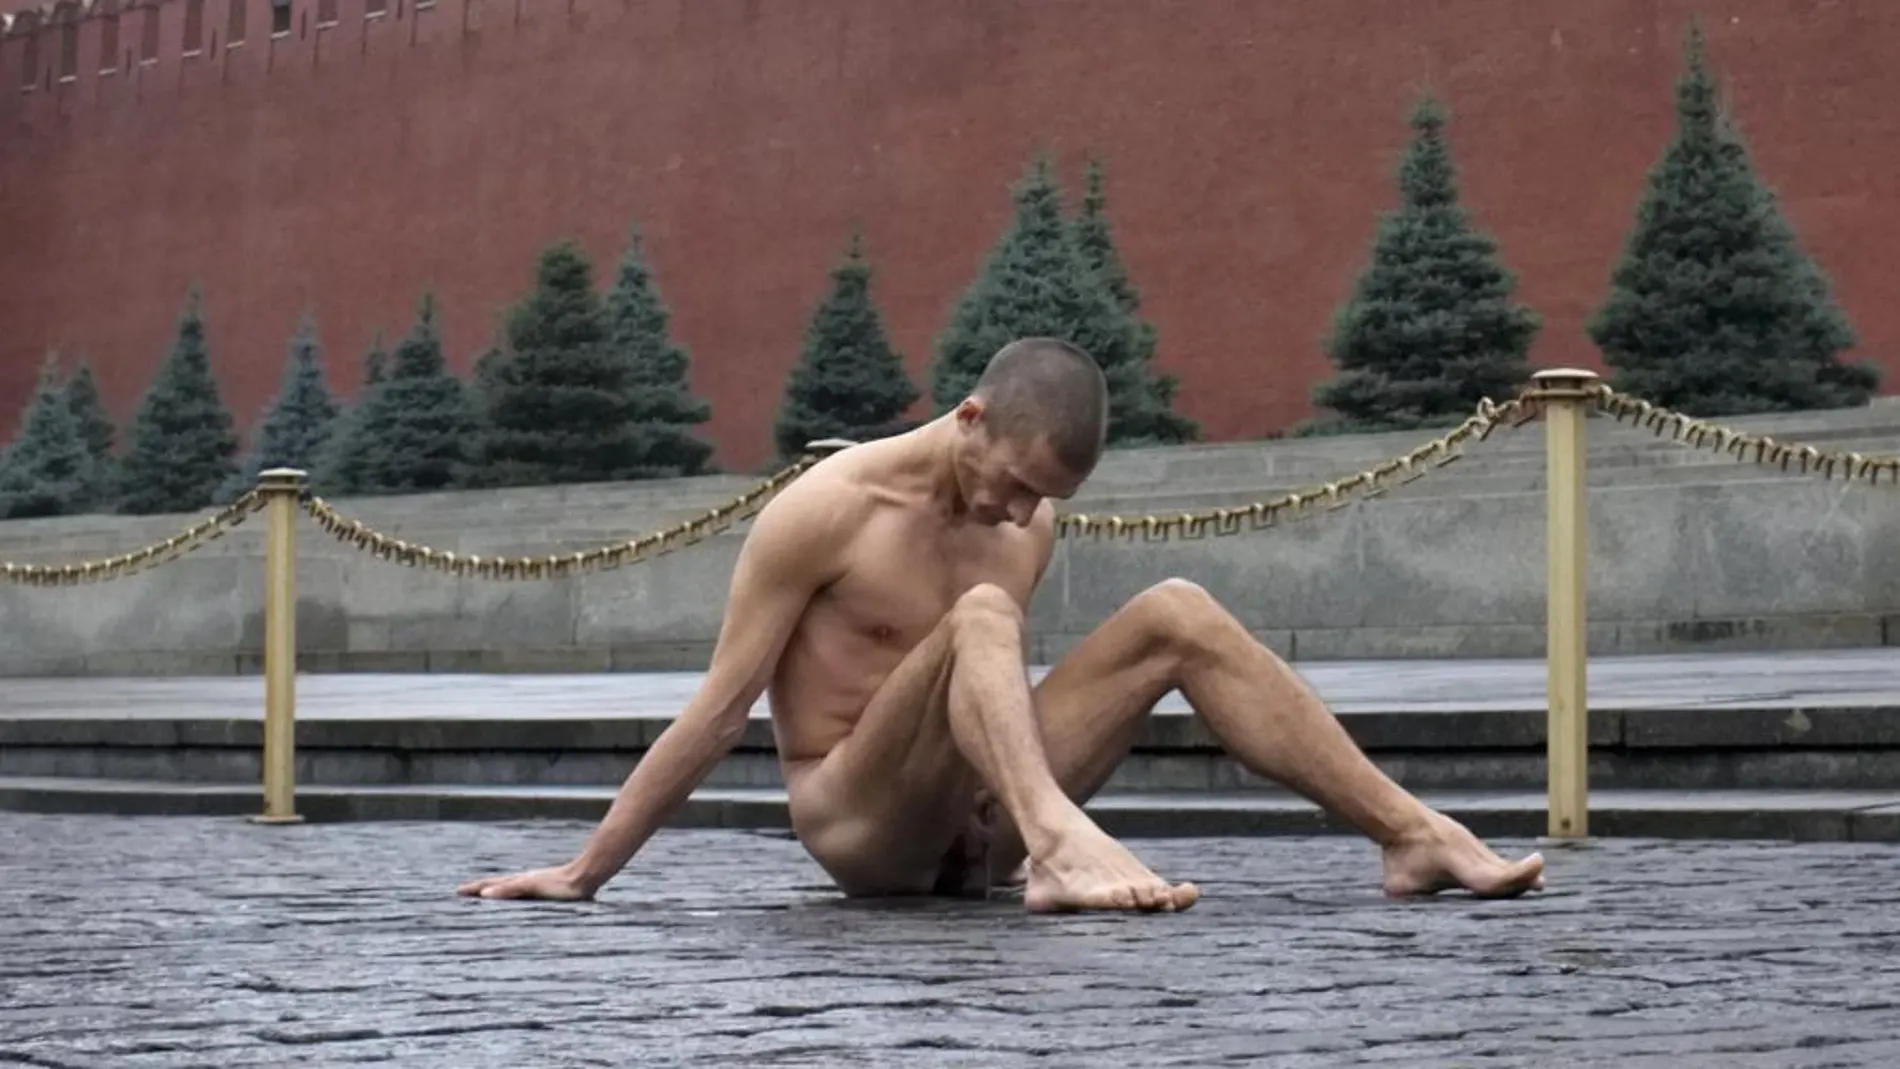 El artista-activista ruso Piotr Pavlenski con sus partes íntimas clavadas en los adoquines de la Plaza Roja de Moscú